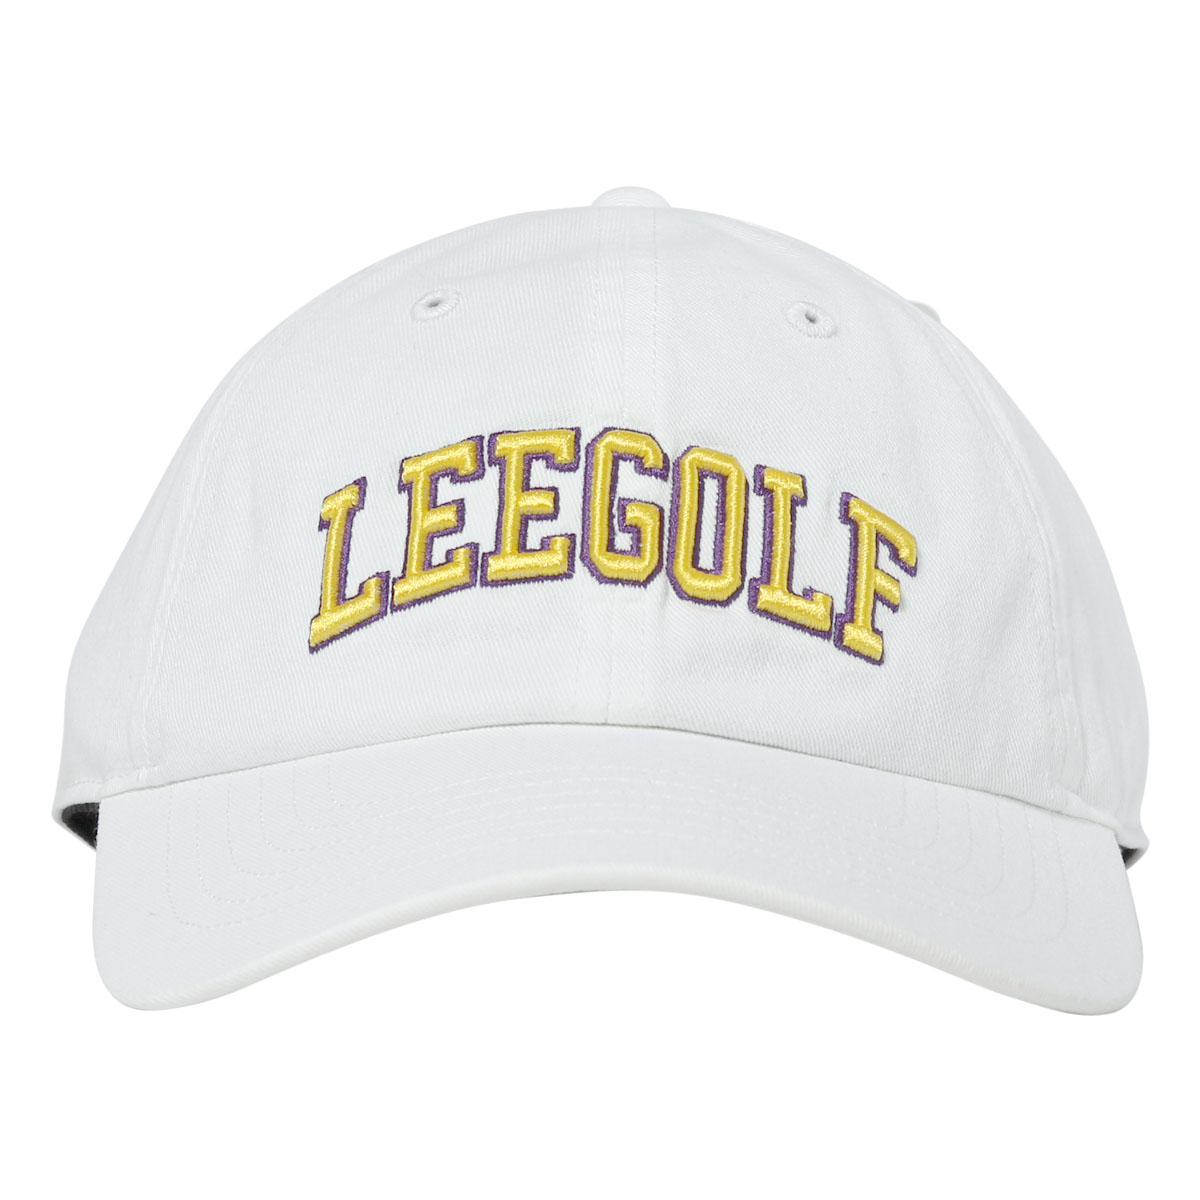 Lee ゴルフ キャップ 帽子 ロゴ メンズ レディース LG4005 リー サイズ調整可能